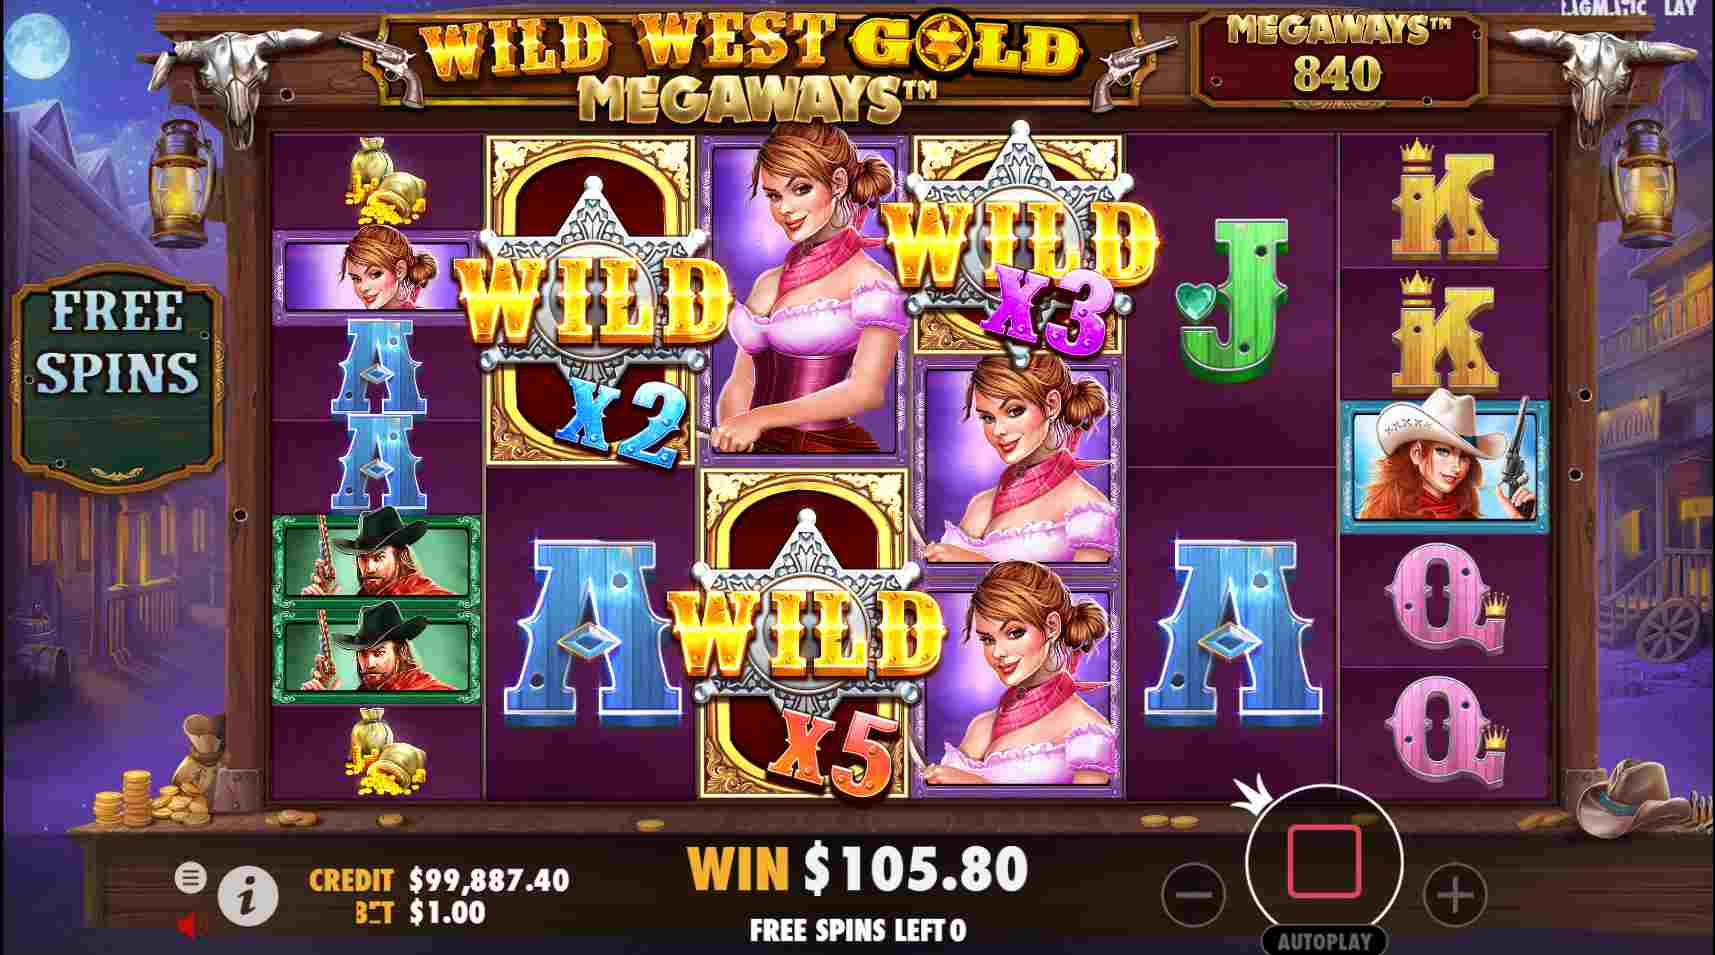 Wild West Gold Megaways Free Spins